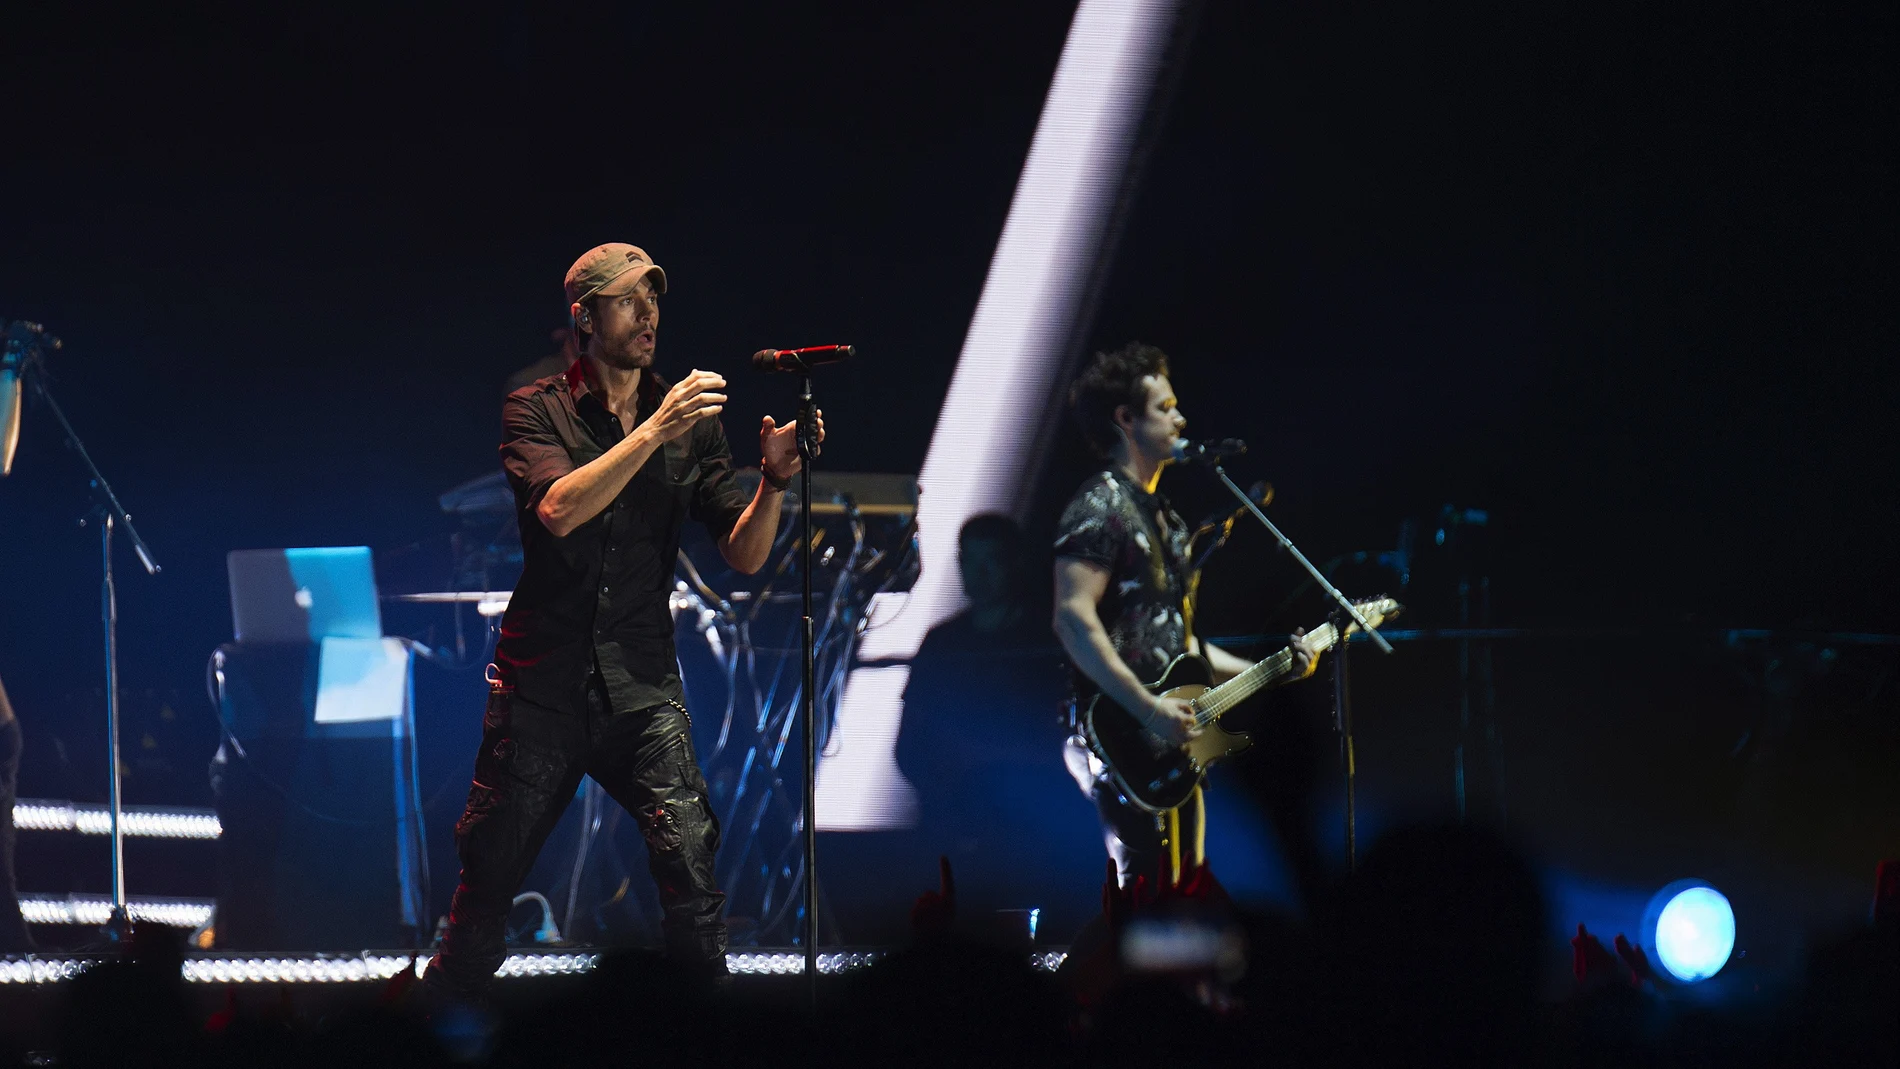 El cantante Enrique Iglesias, en un momento del concierto que ha ofrecio anoche en Santander